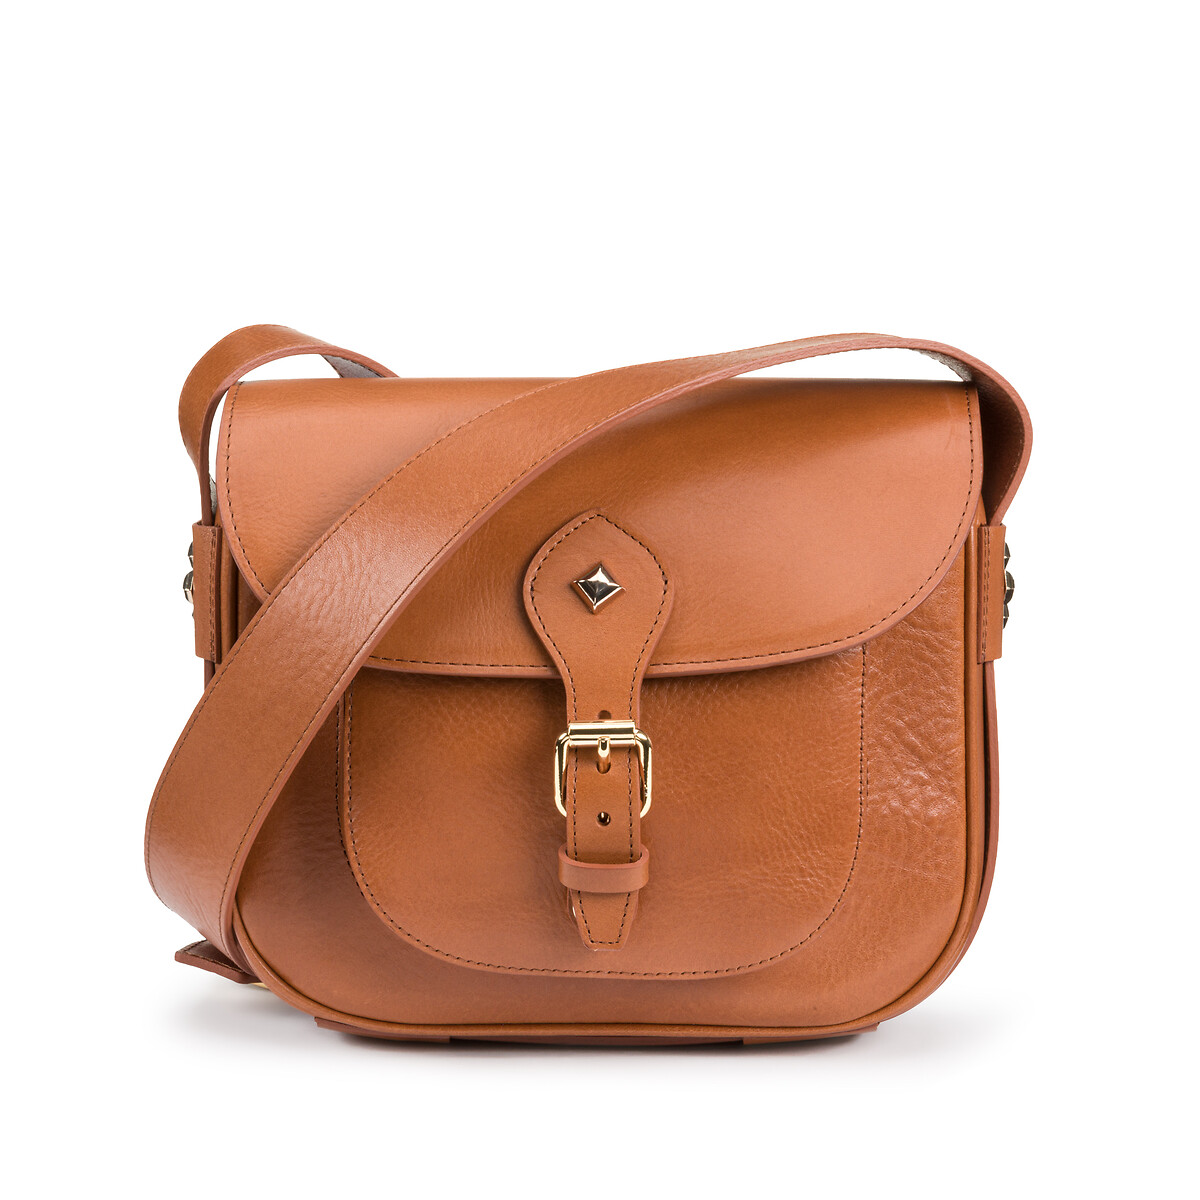 Flav Leather Shoulder Flap Saddle Bag with Shoulder Strap